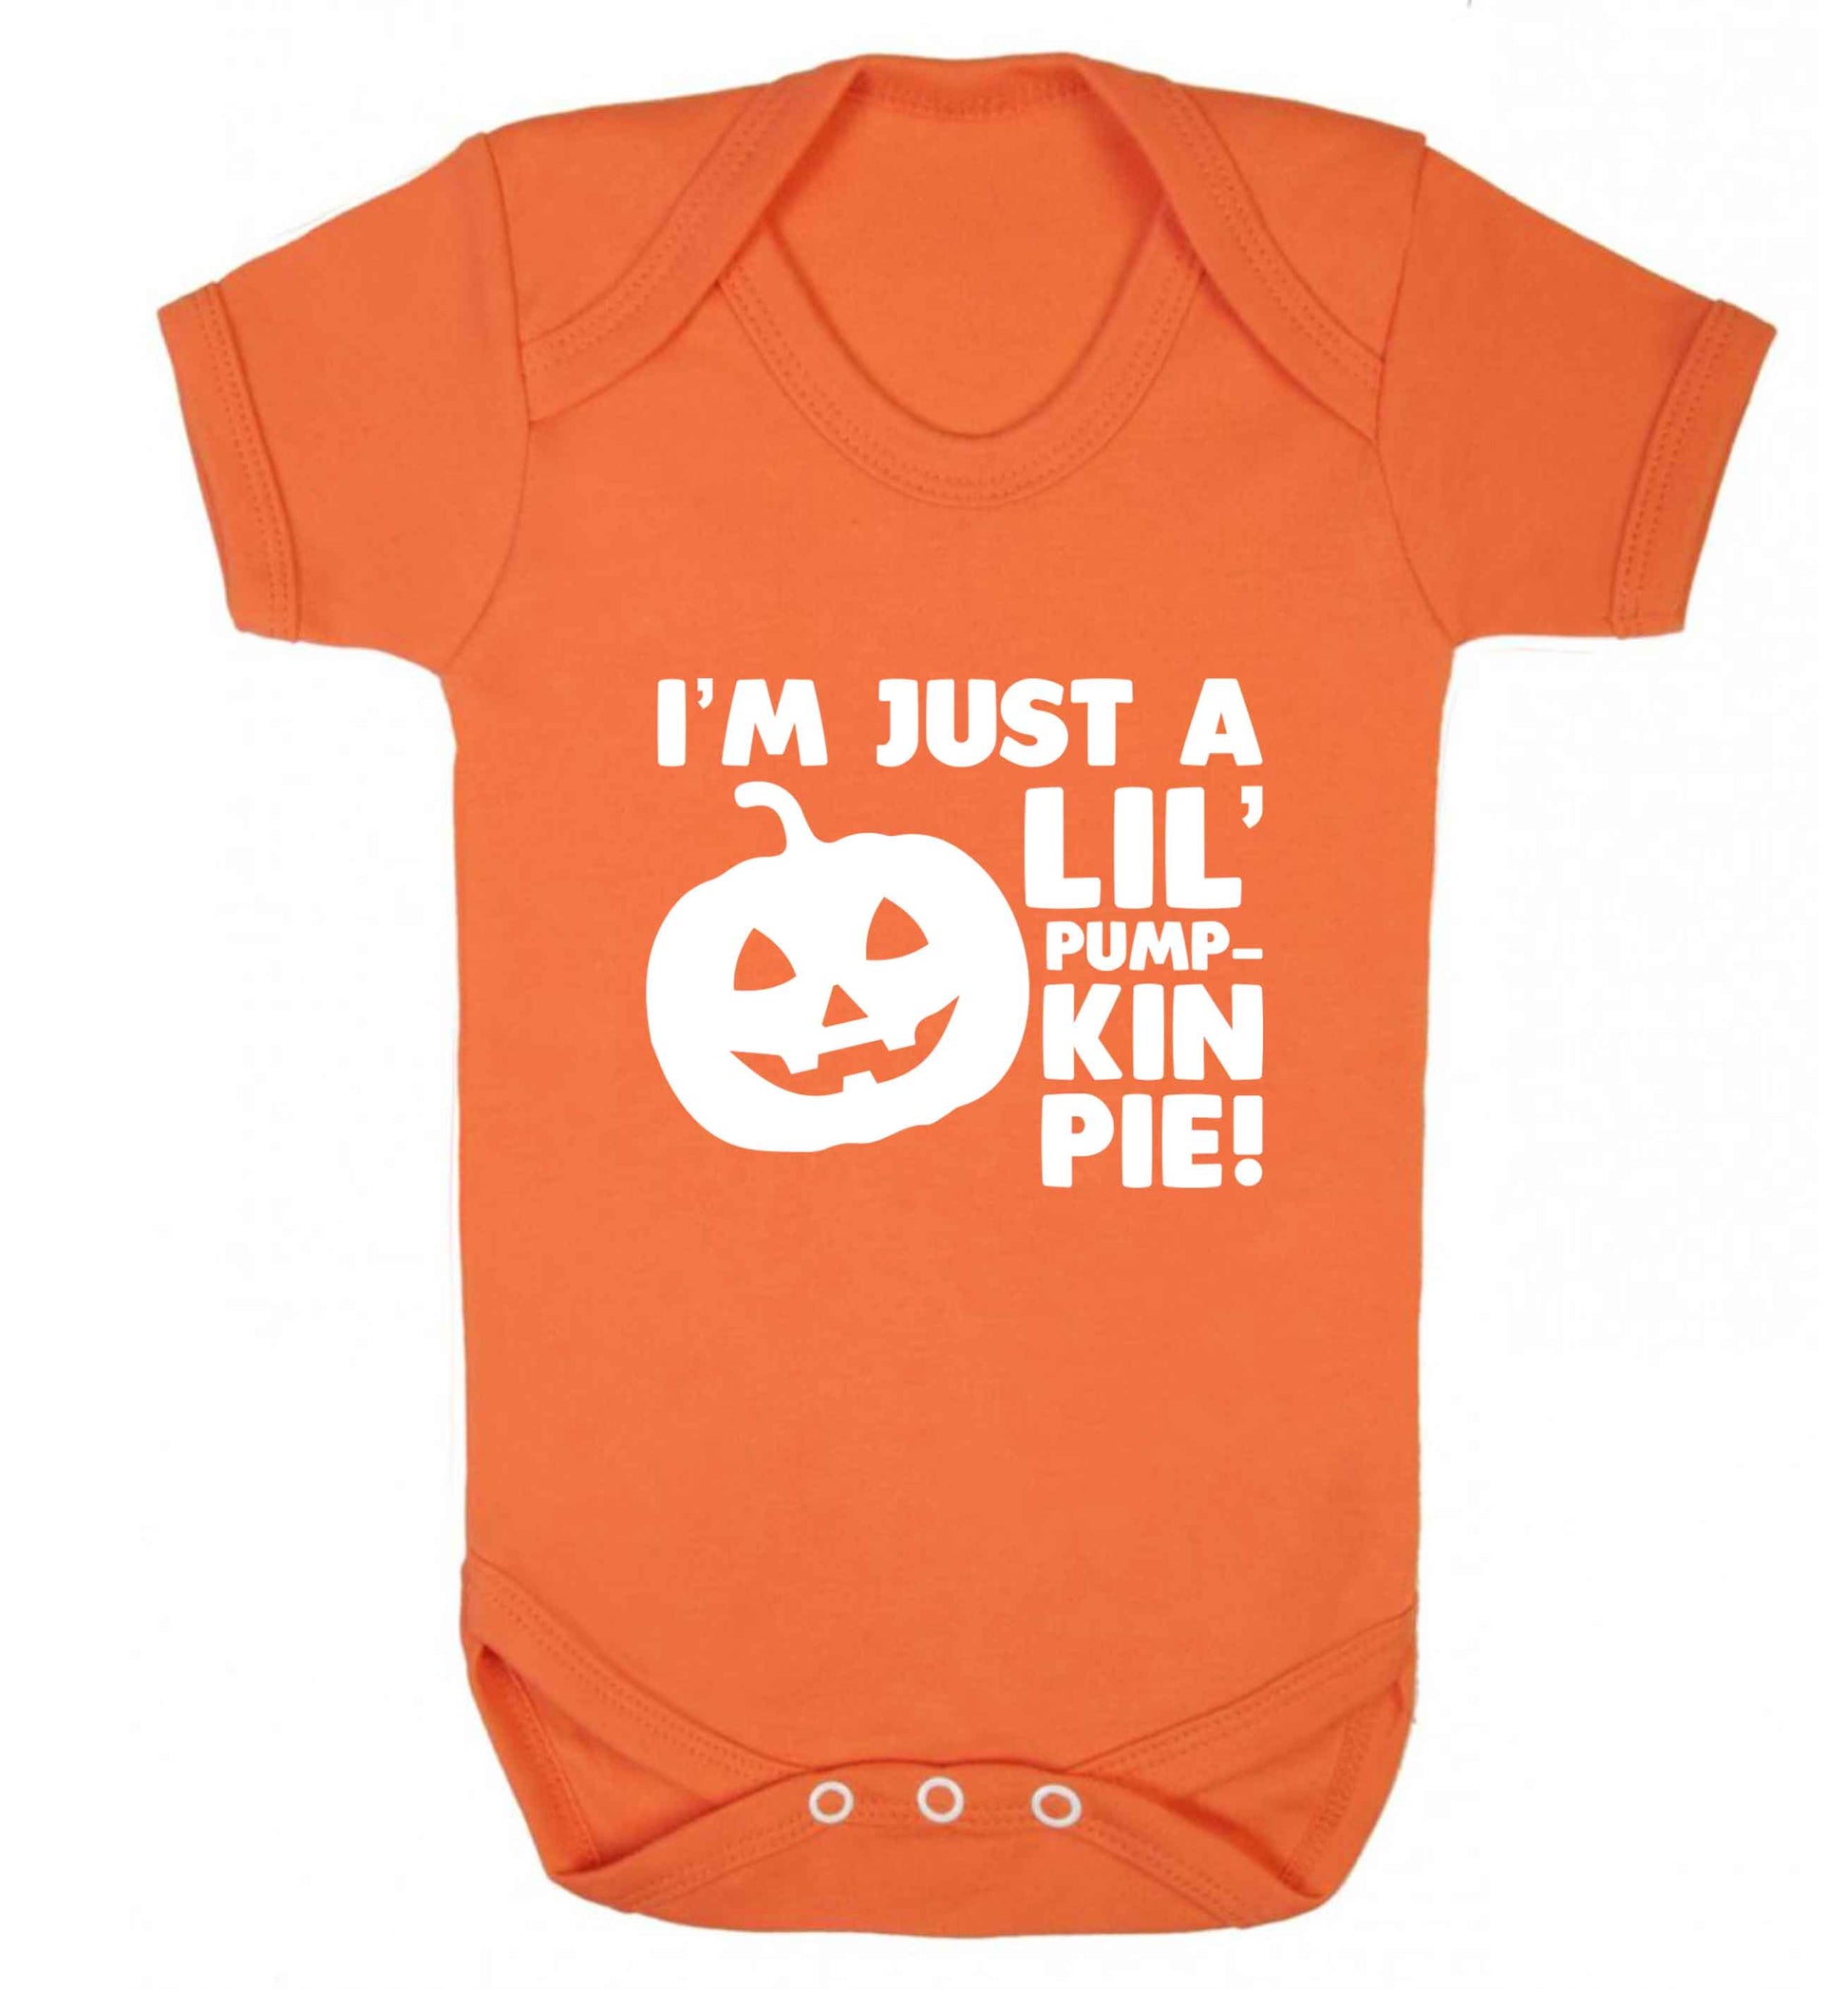 I'm just a lil' pumpkin pie baby vest orange 18-24 months